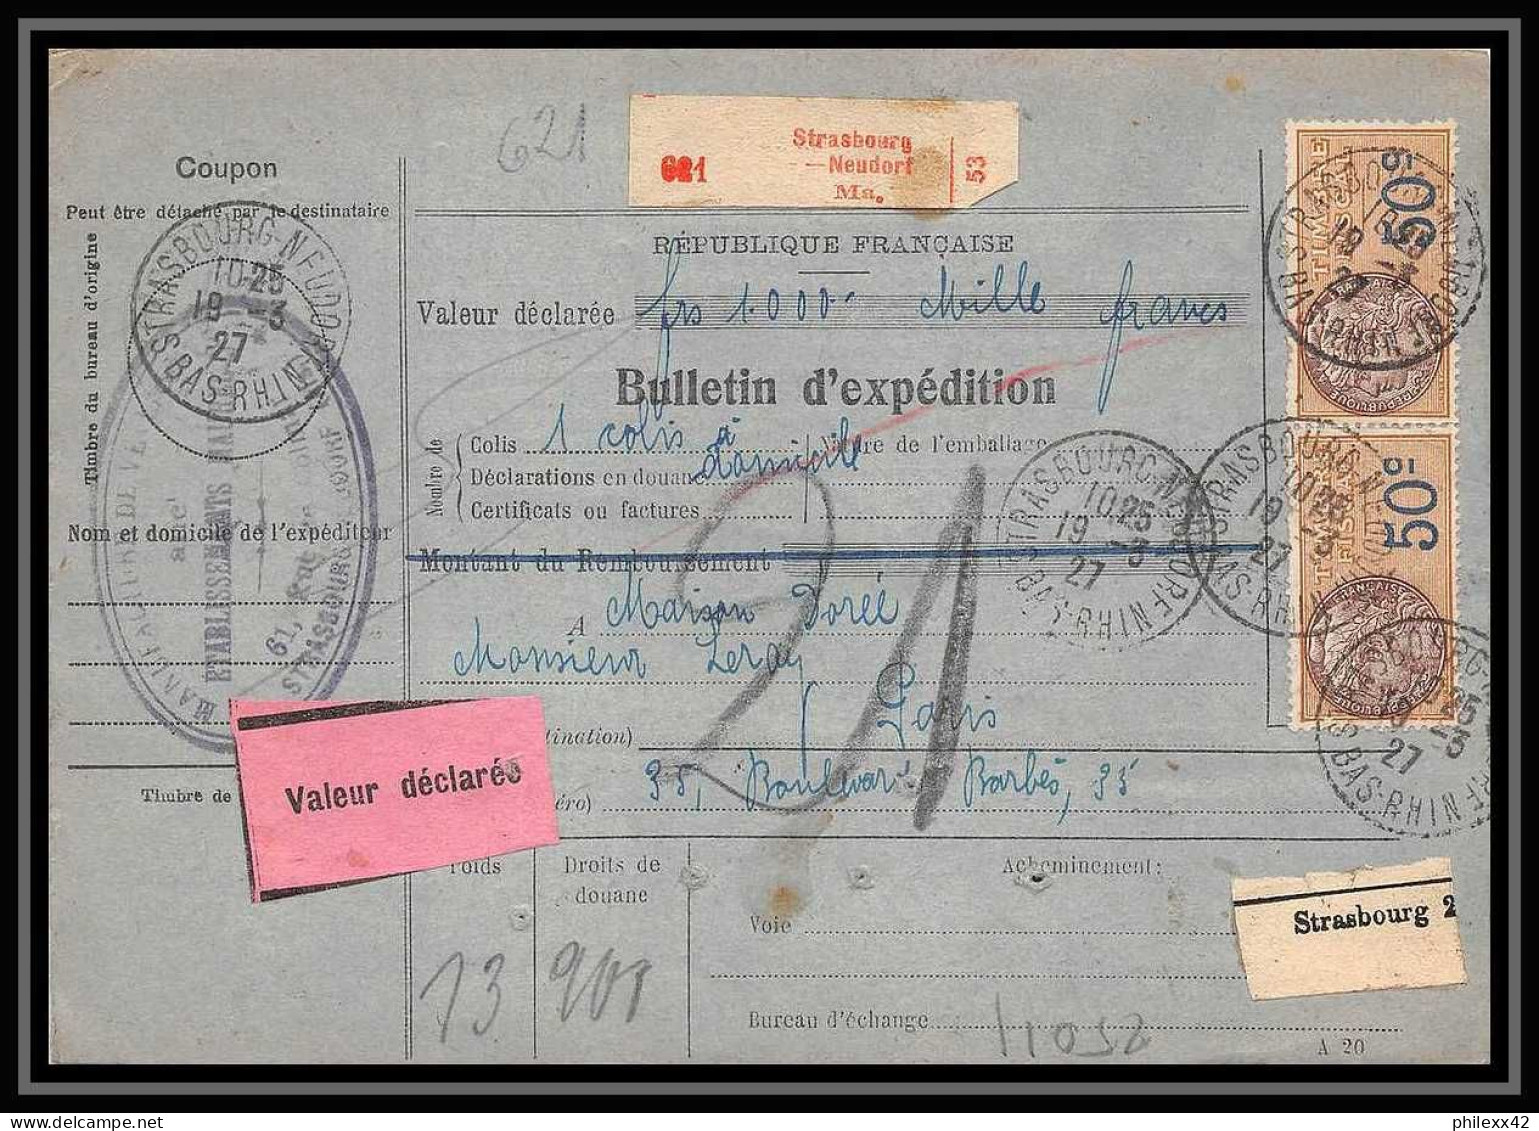 25011 Bulletin D'expédition France Colis Postaux Fiscal Haut Rhin 1927 Strasbourg Semeuse Merson 123 Valeur Déclarée - Brieven & Documenten